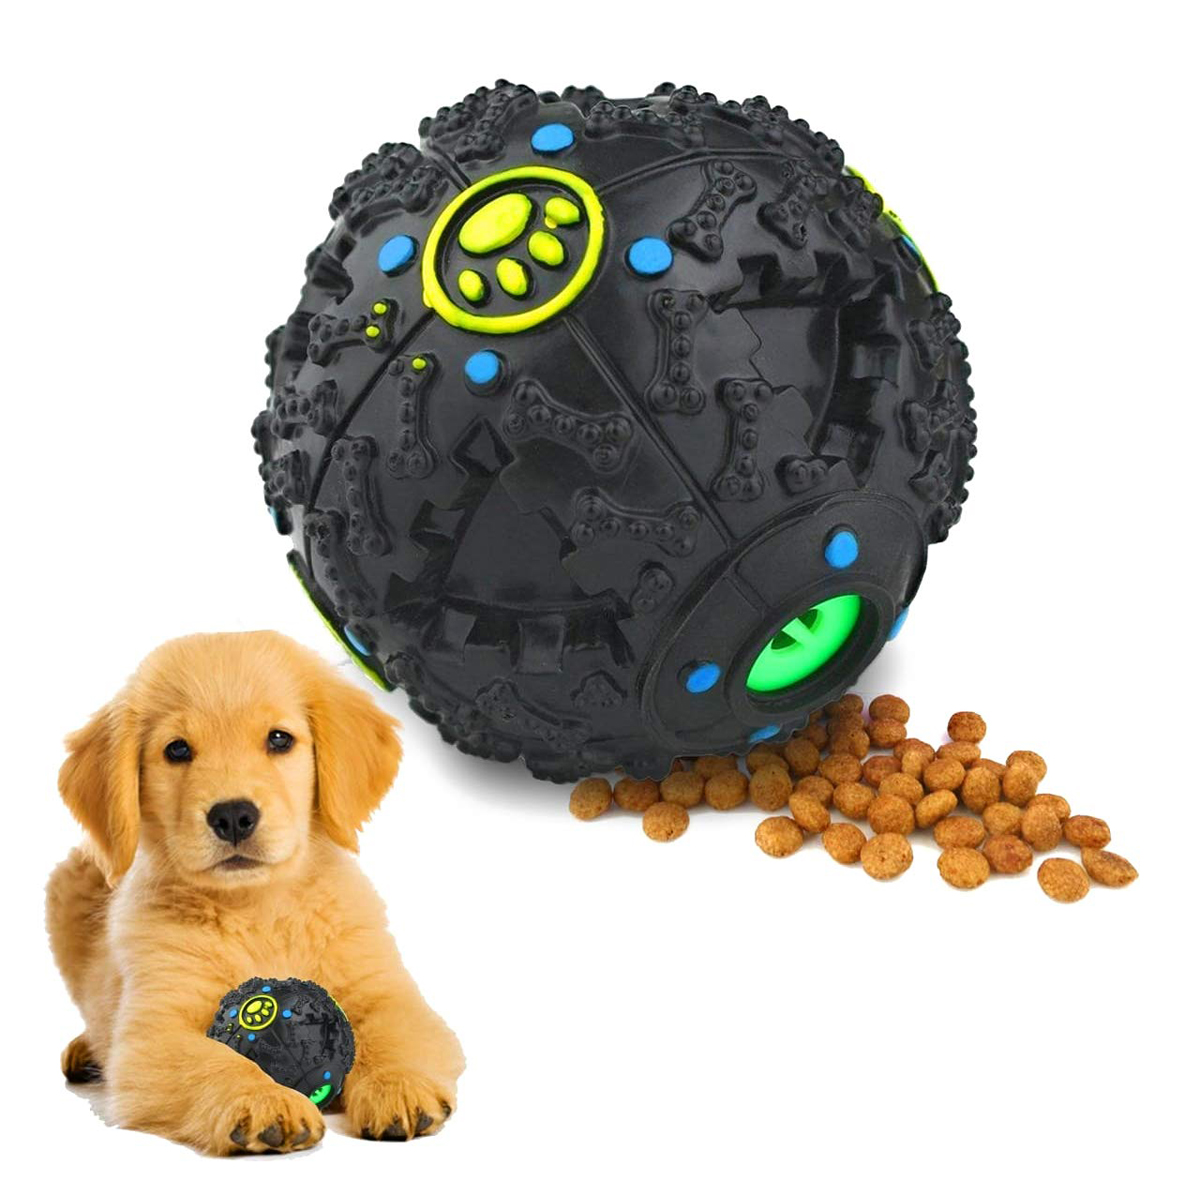 

Pet Собака Обучающие игрушки Tough Treat Chew Sound Activity Скрипучий мяч Chew